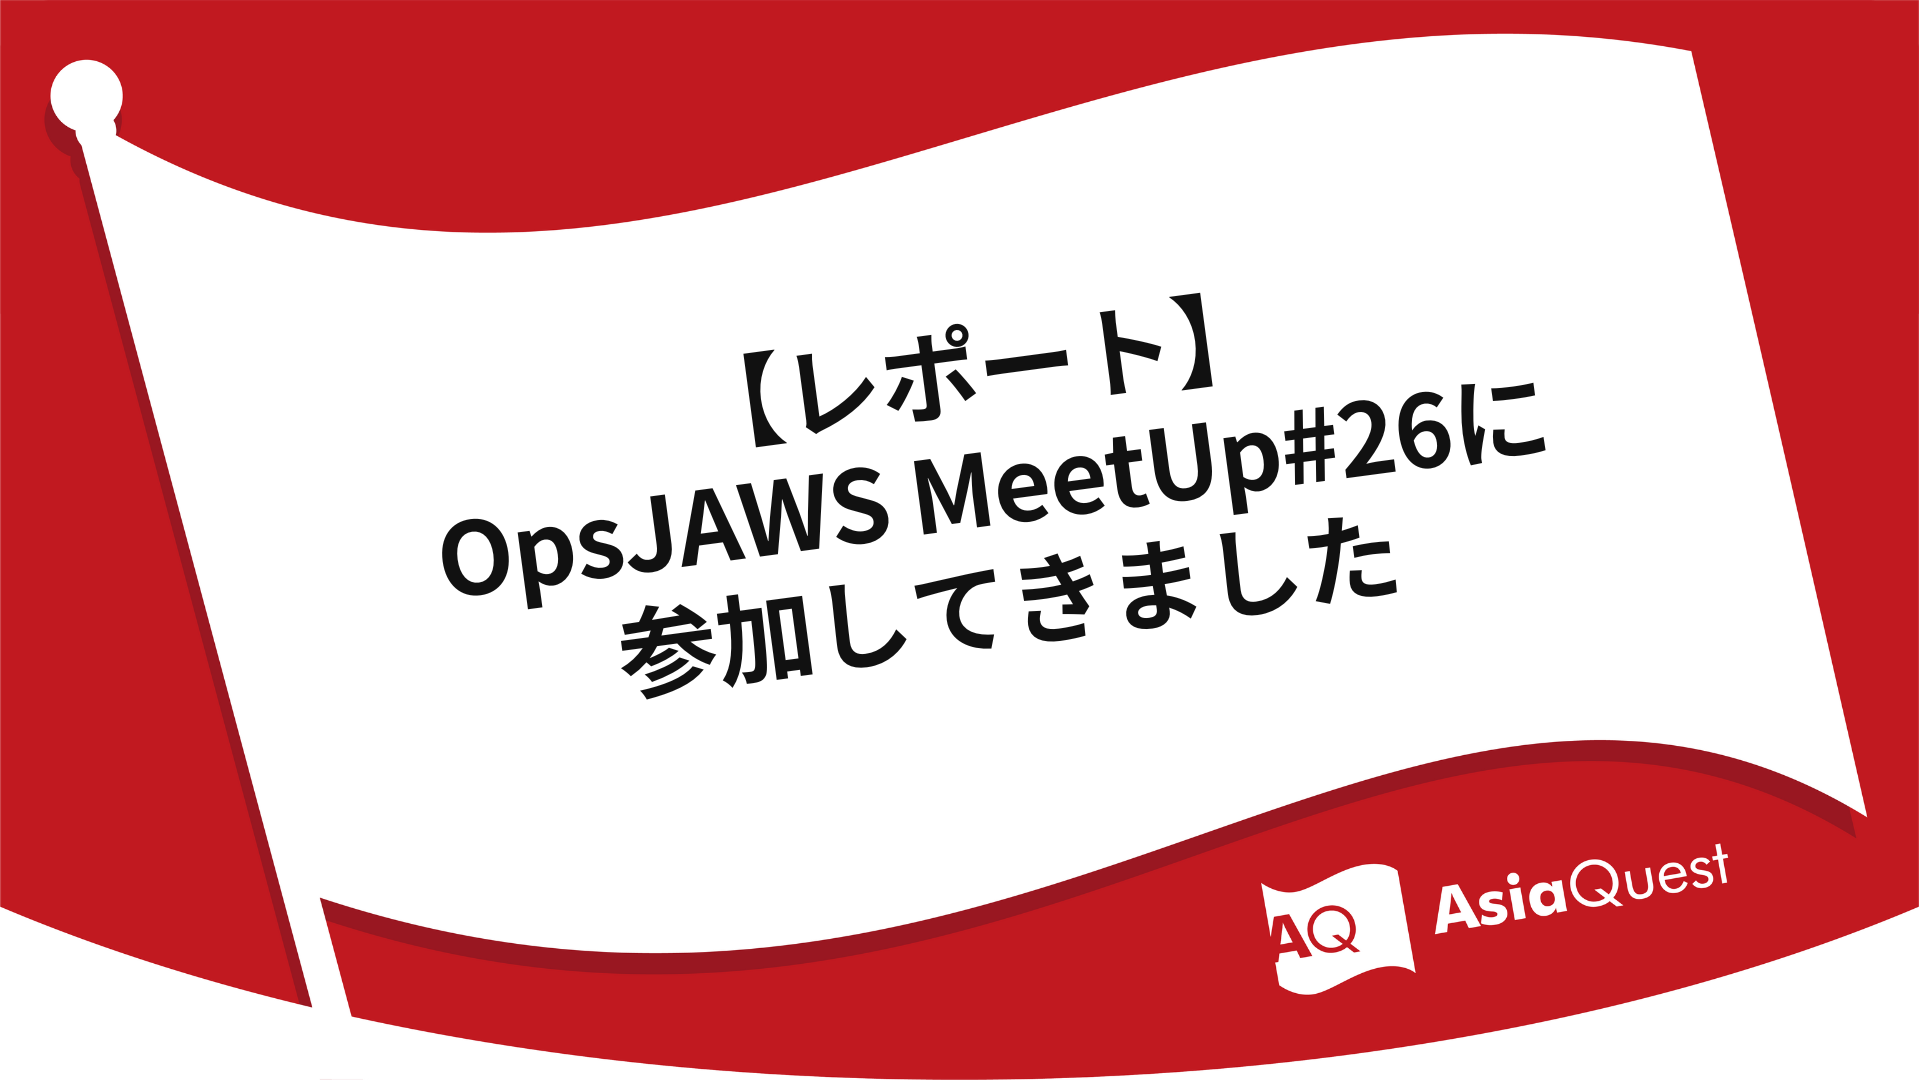 【レポート】OpsJAWS MeetUp#26に参加してきました